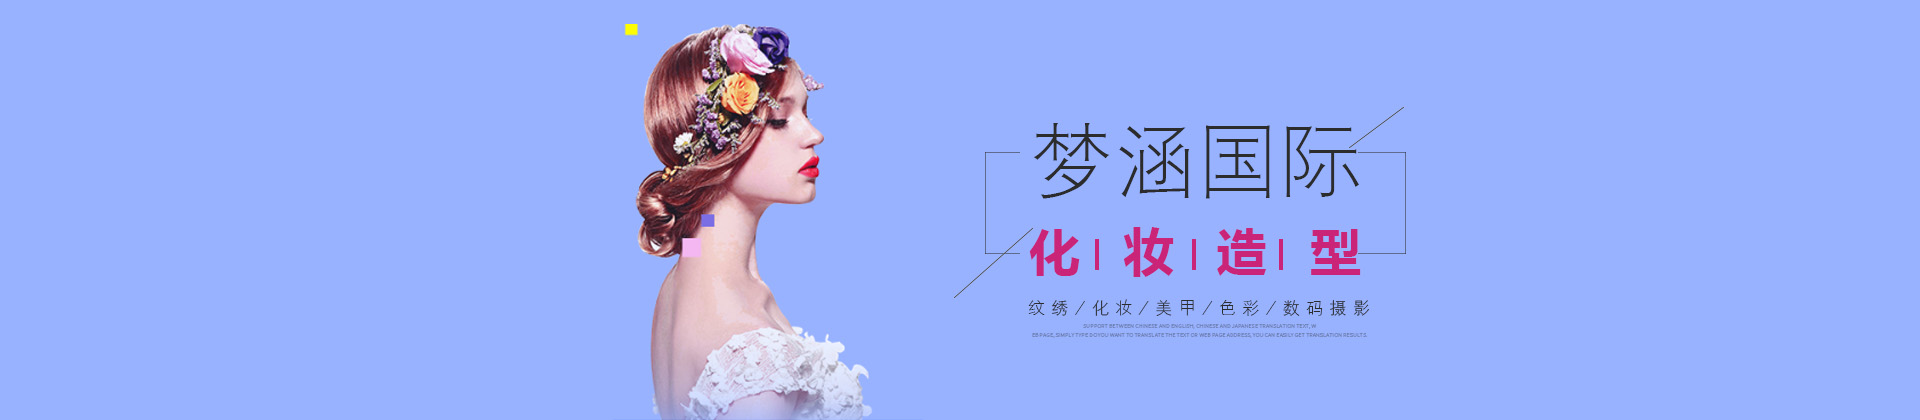 郑州梦涵国际化妆教育